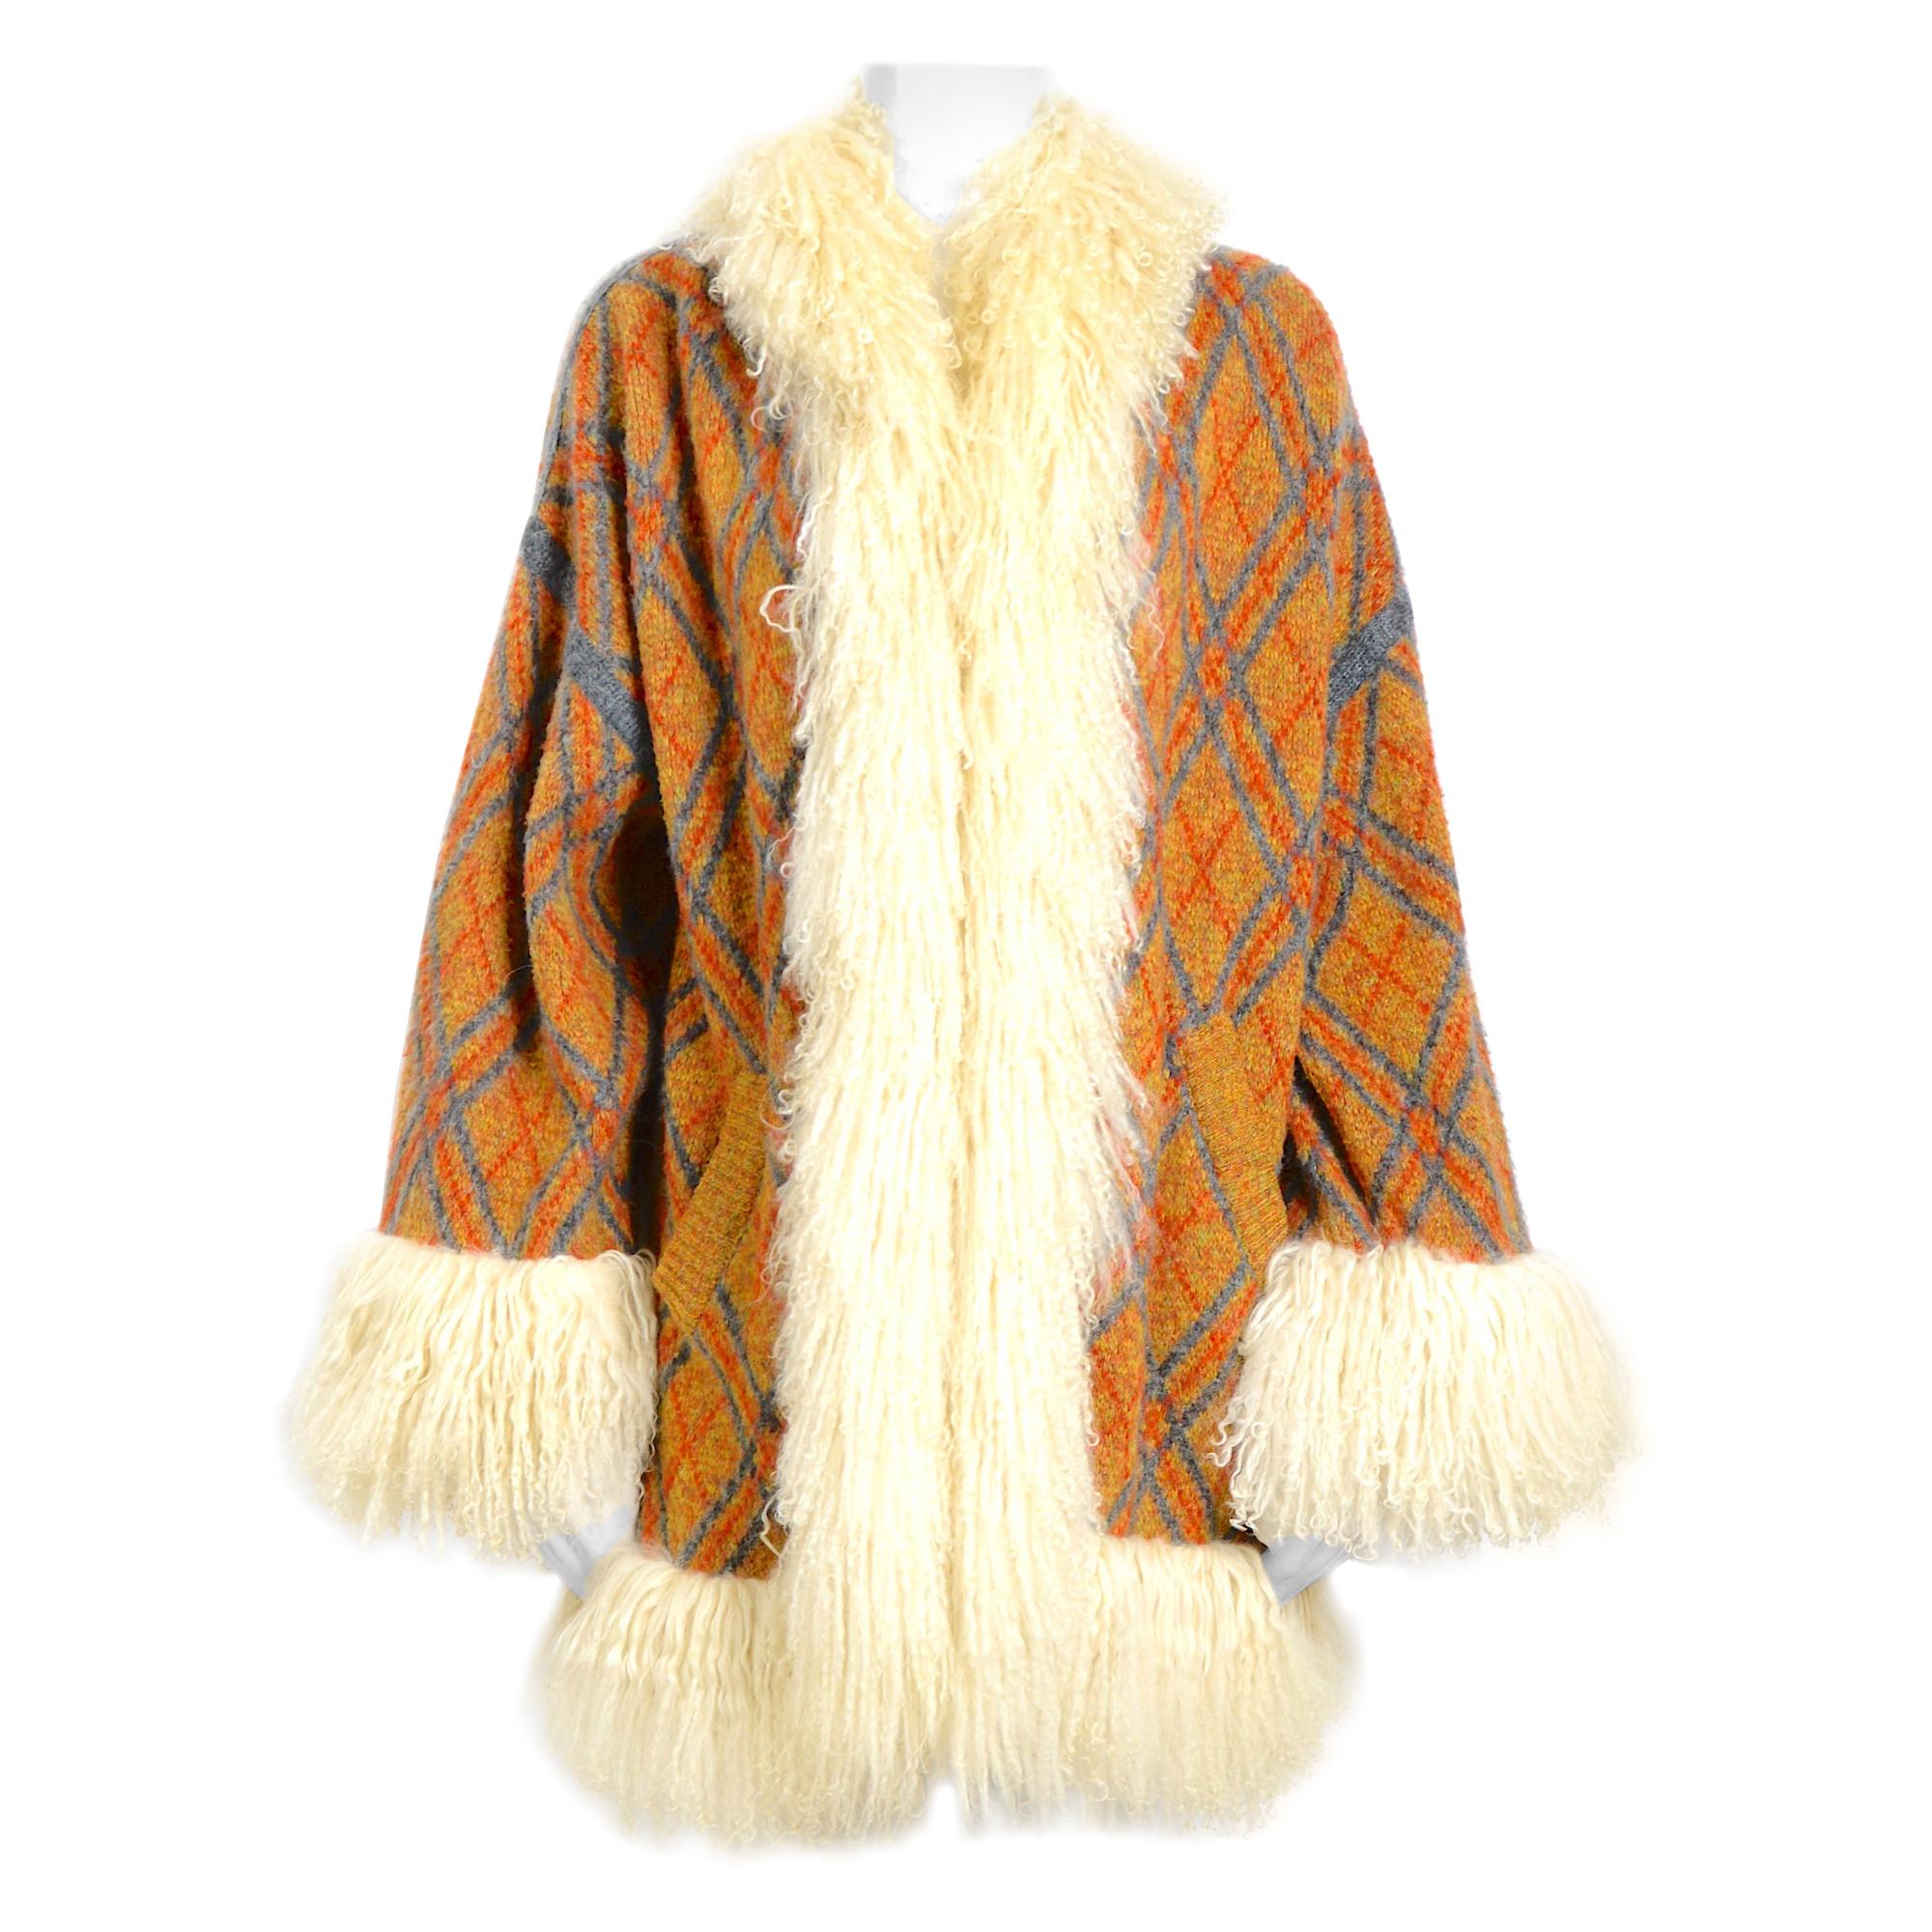 Yves Saint Laurent vintage 1980s mongolian lamb fur trimmed knit cardigan